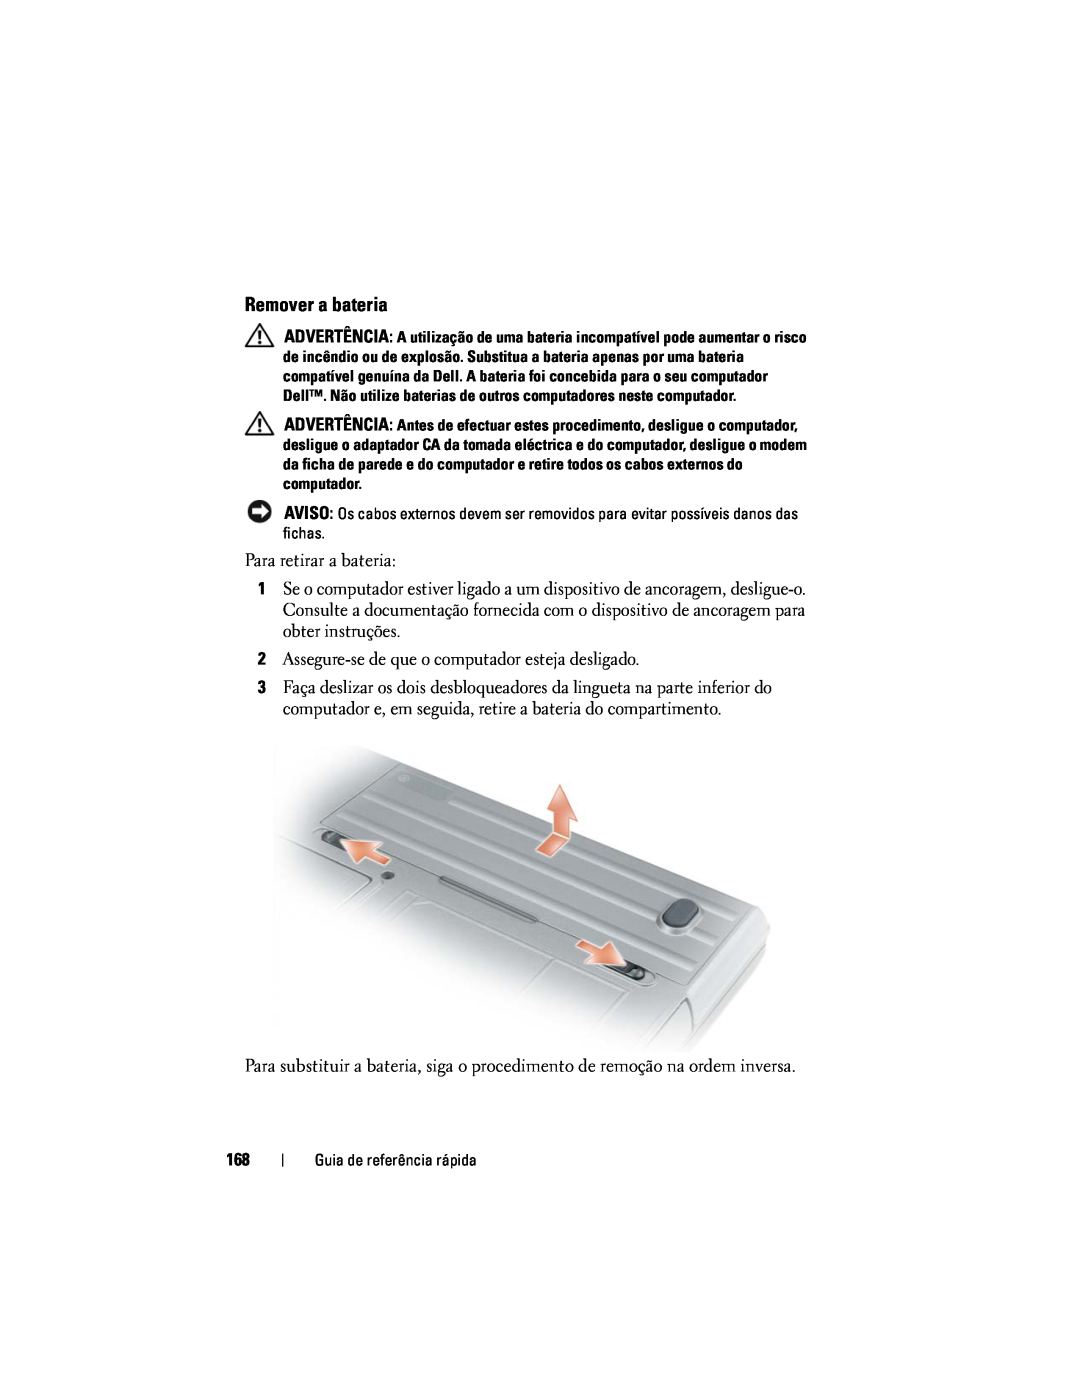 Dell PP18L manual Remover a bateria, Para retirar a bateria 